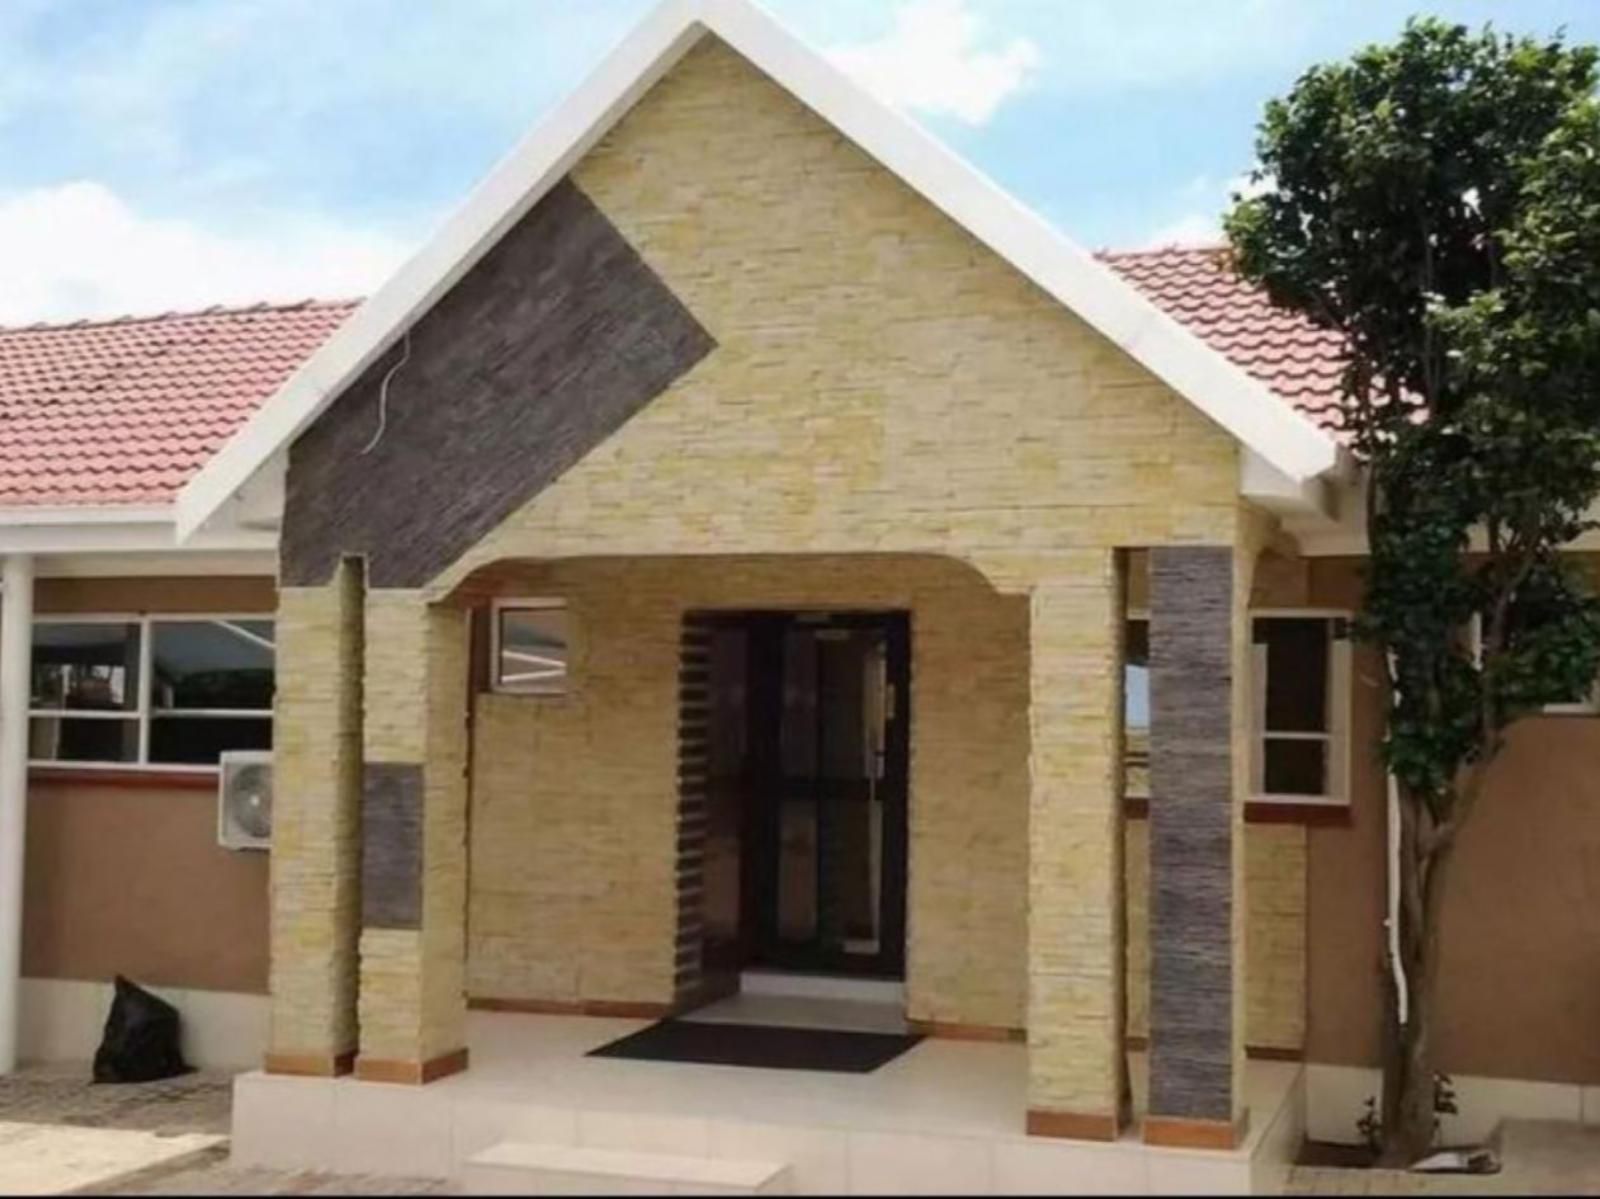 Channel View Lodge Kempton Park Johannesburg Gauteng South Africa House, Building, Architecture, Brick Texture, Texture